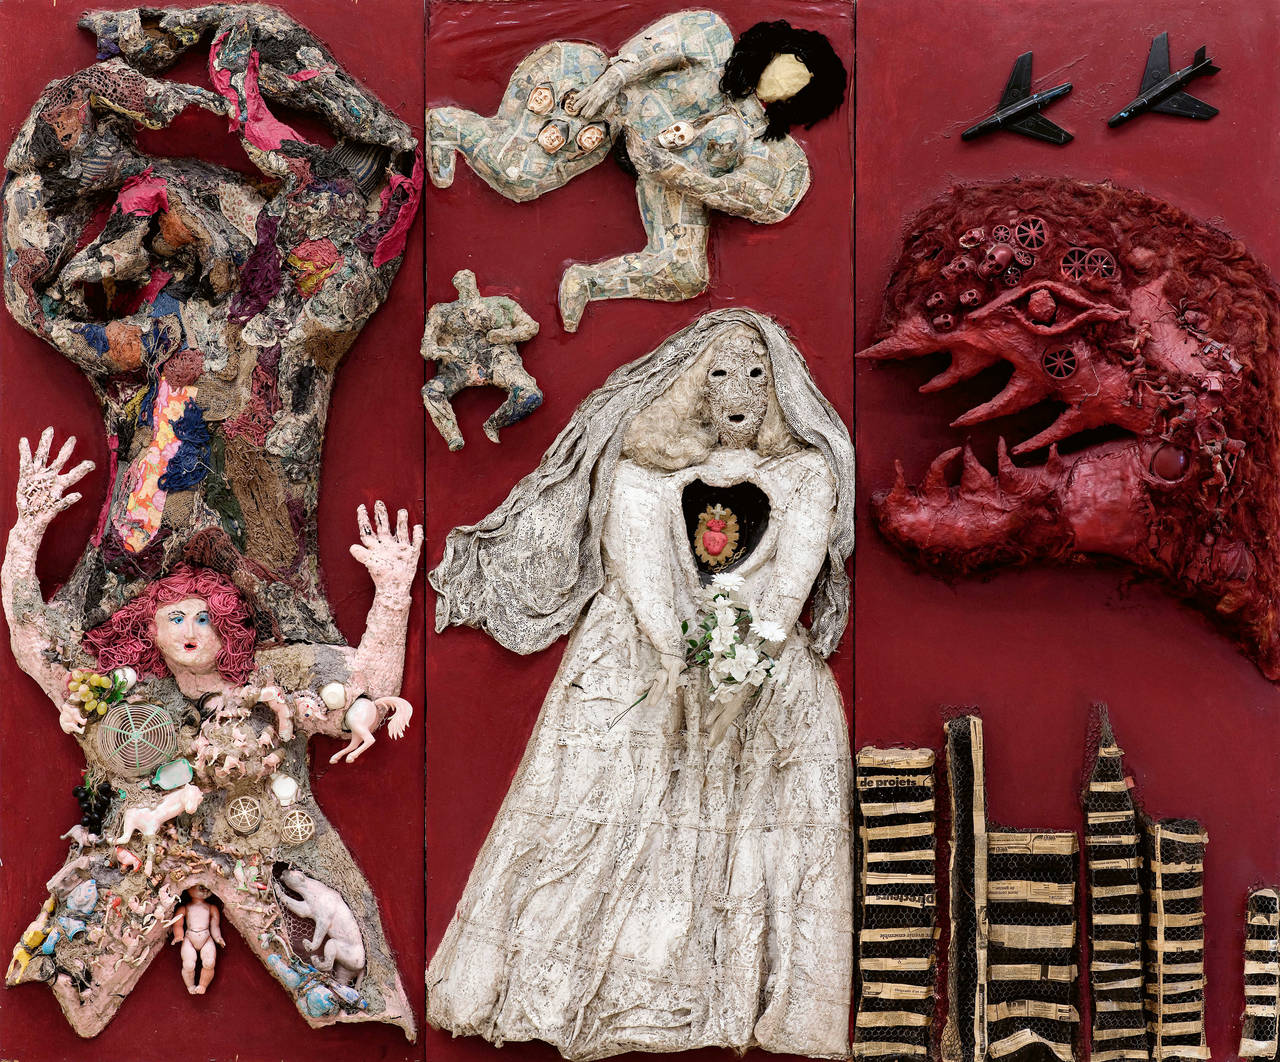 Assemblage auf rotem Hintergrund, Niki de Saint Phalle, Godzilla, Altar der Frauen, braut, prostituierte, Bedrohung 